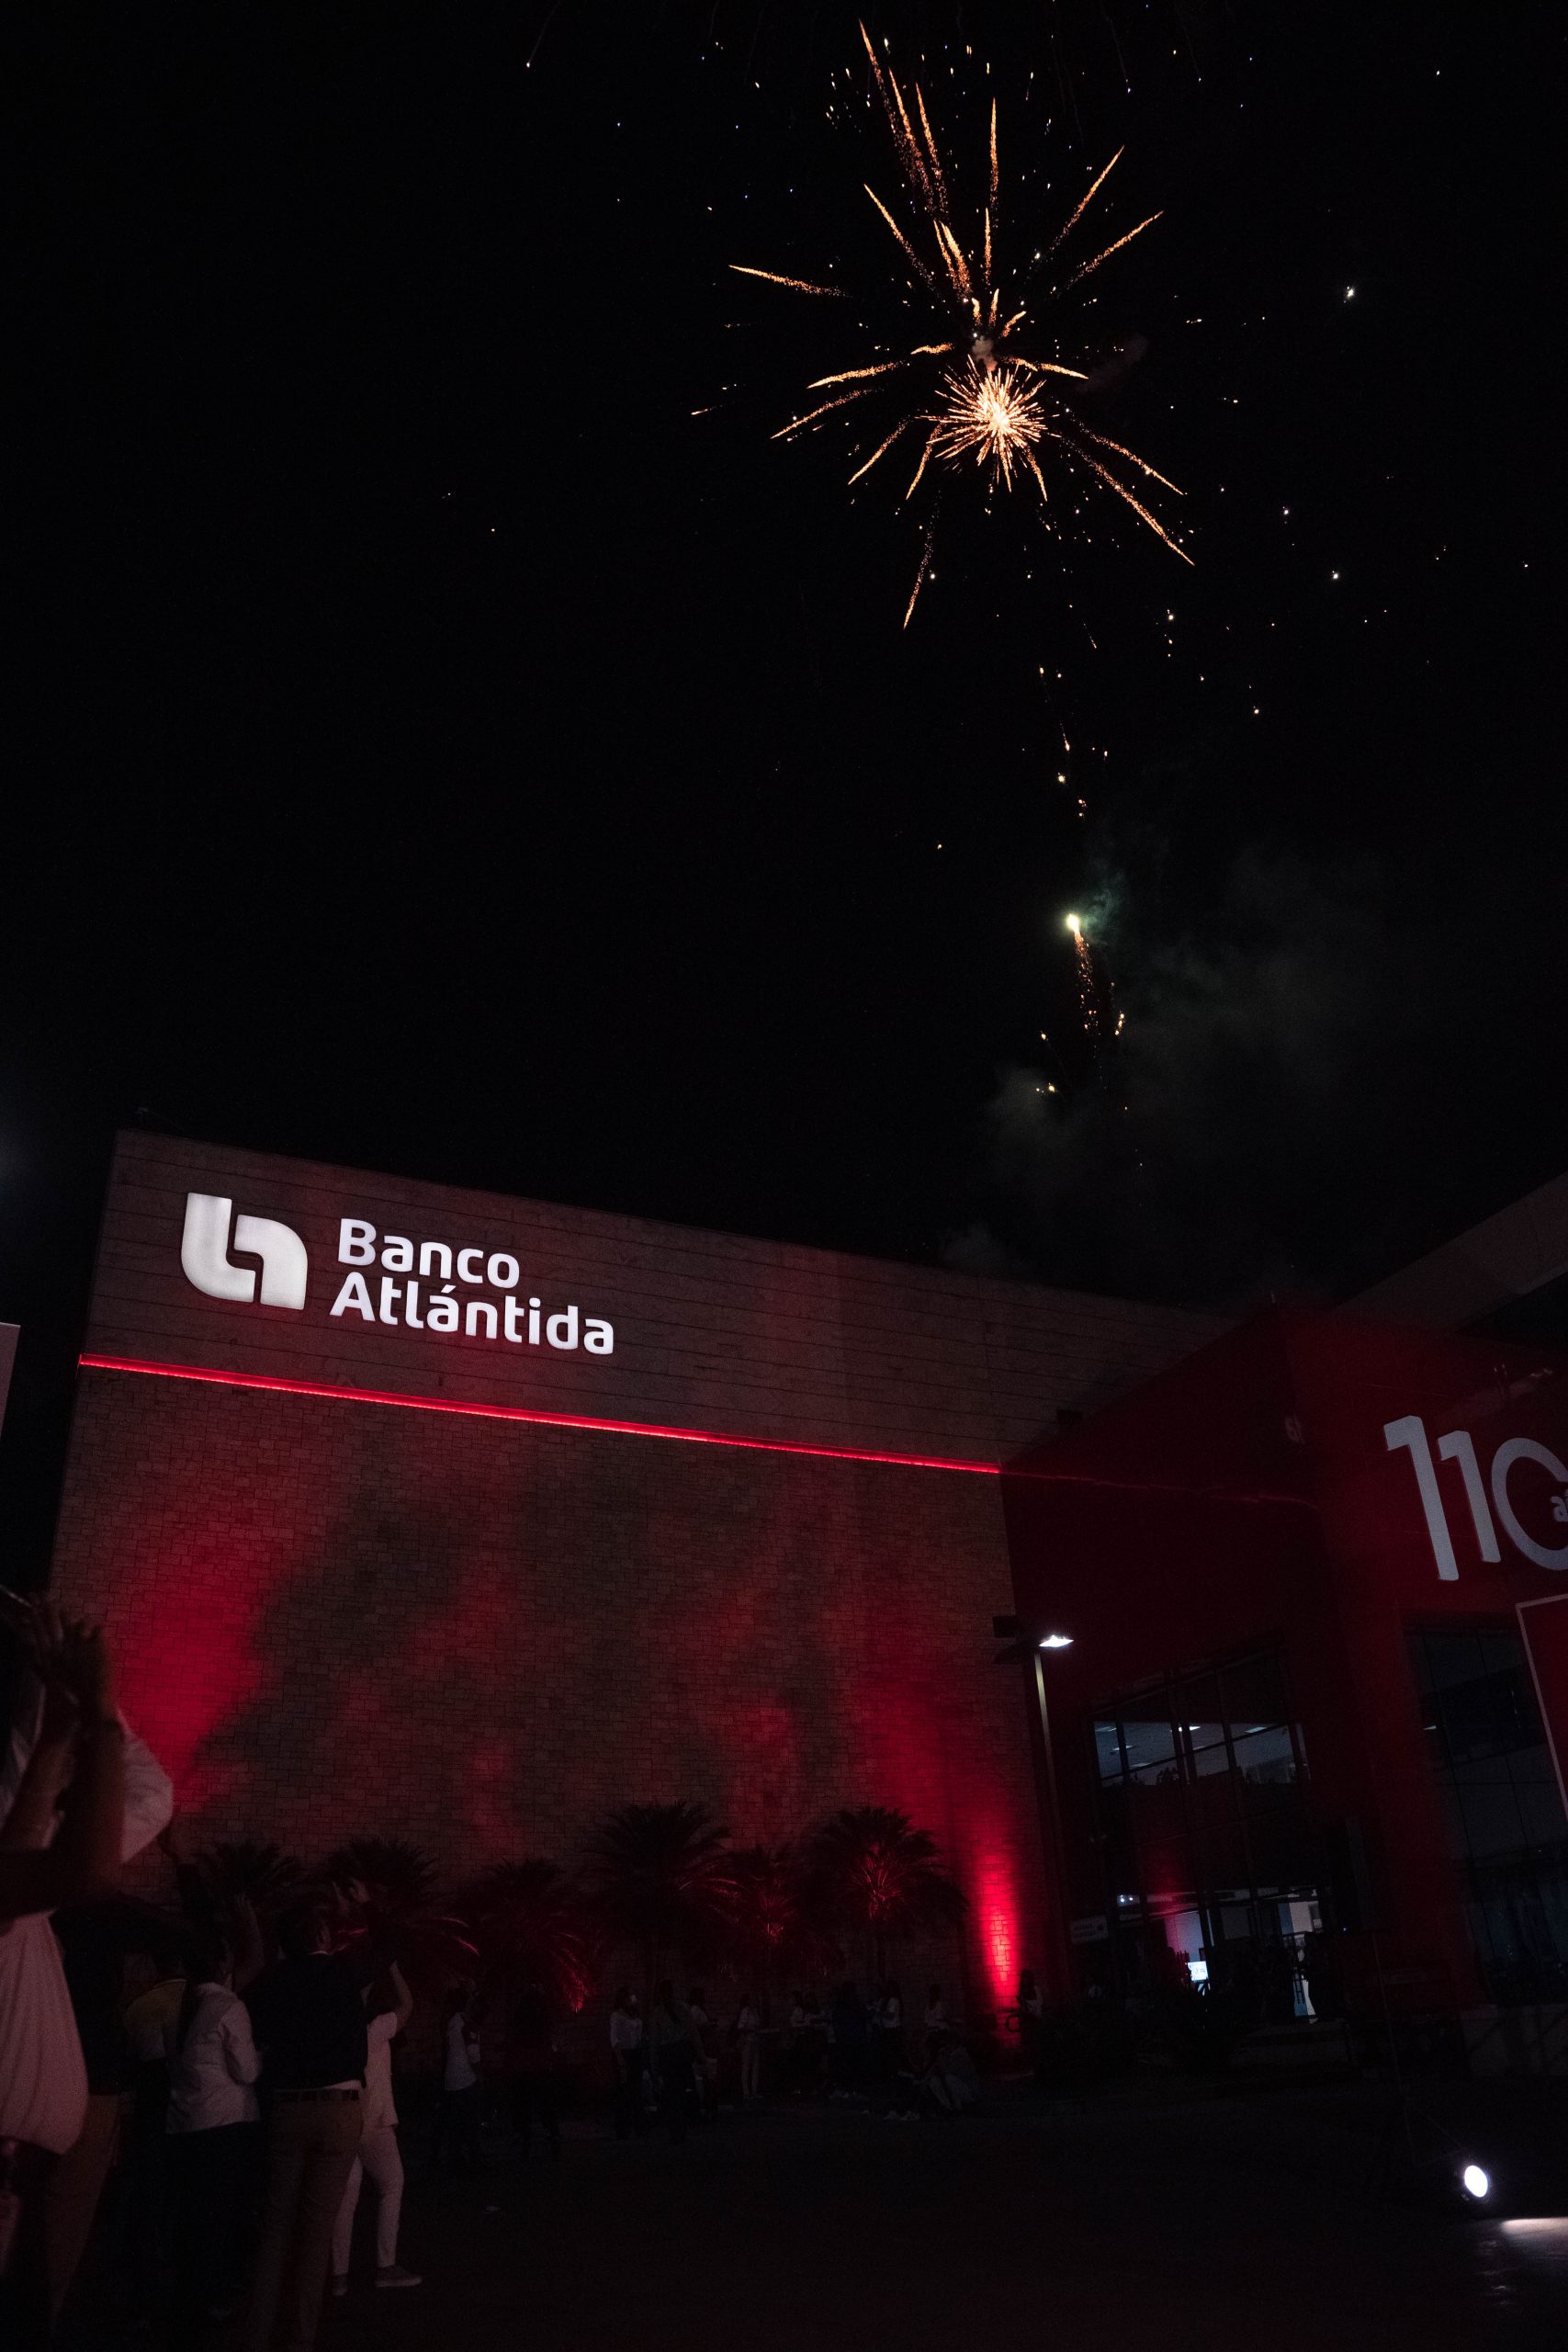 Banco Atlántida, el banco de las grandes promociones, celebró su 110 Aniversario premiando la lealtad de sus clientes